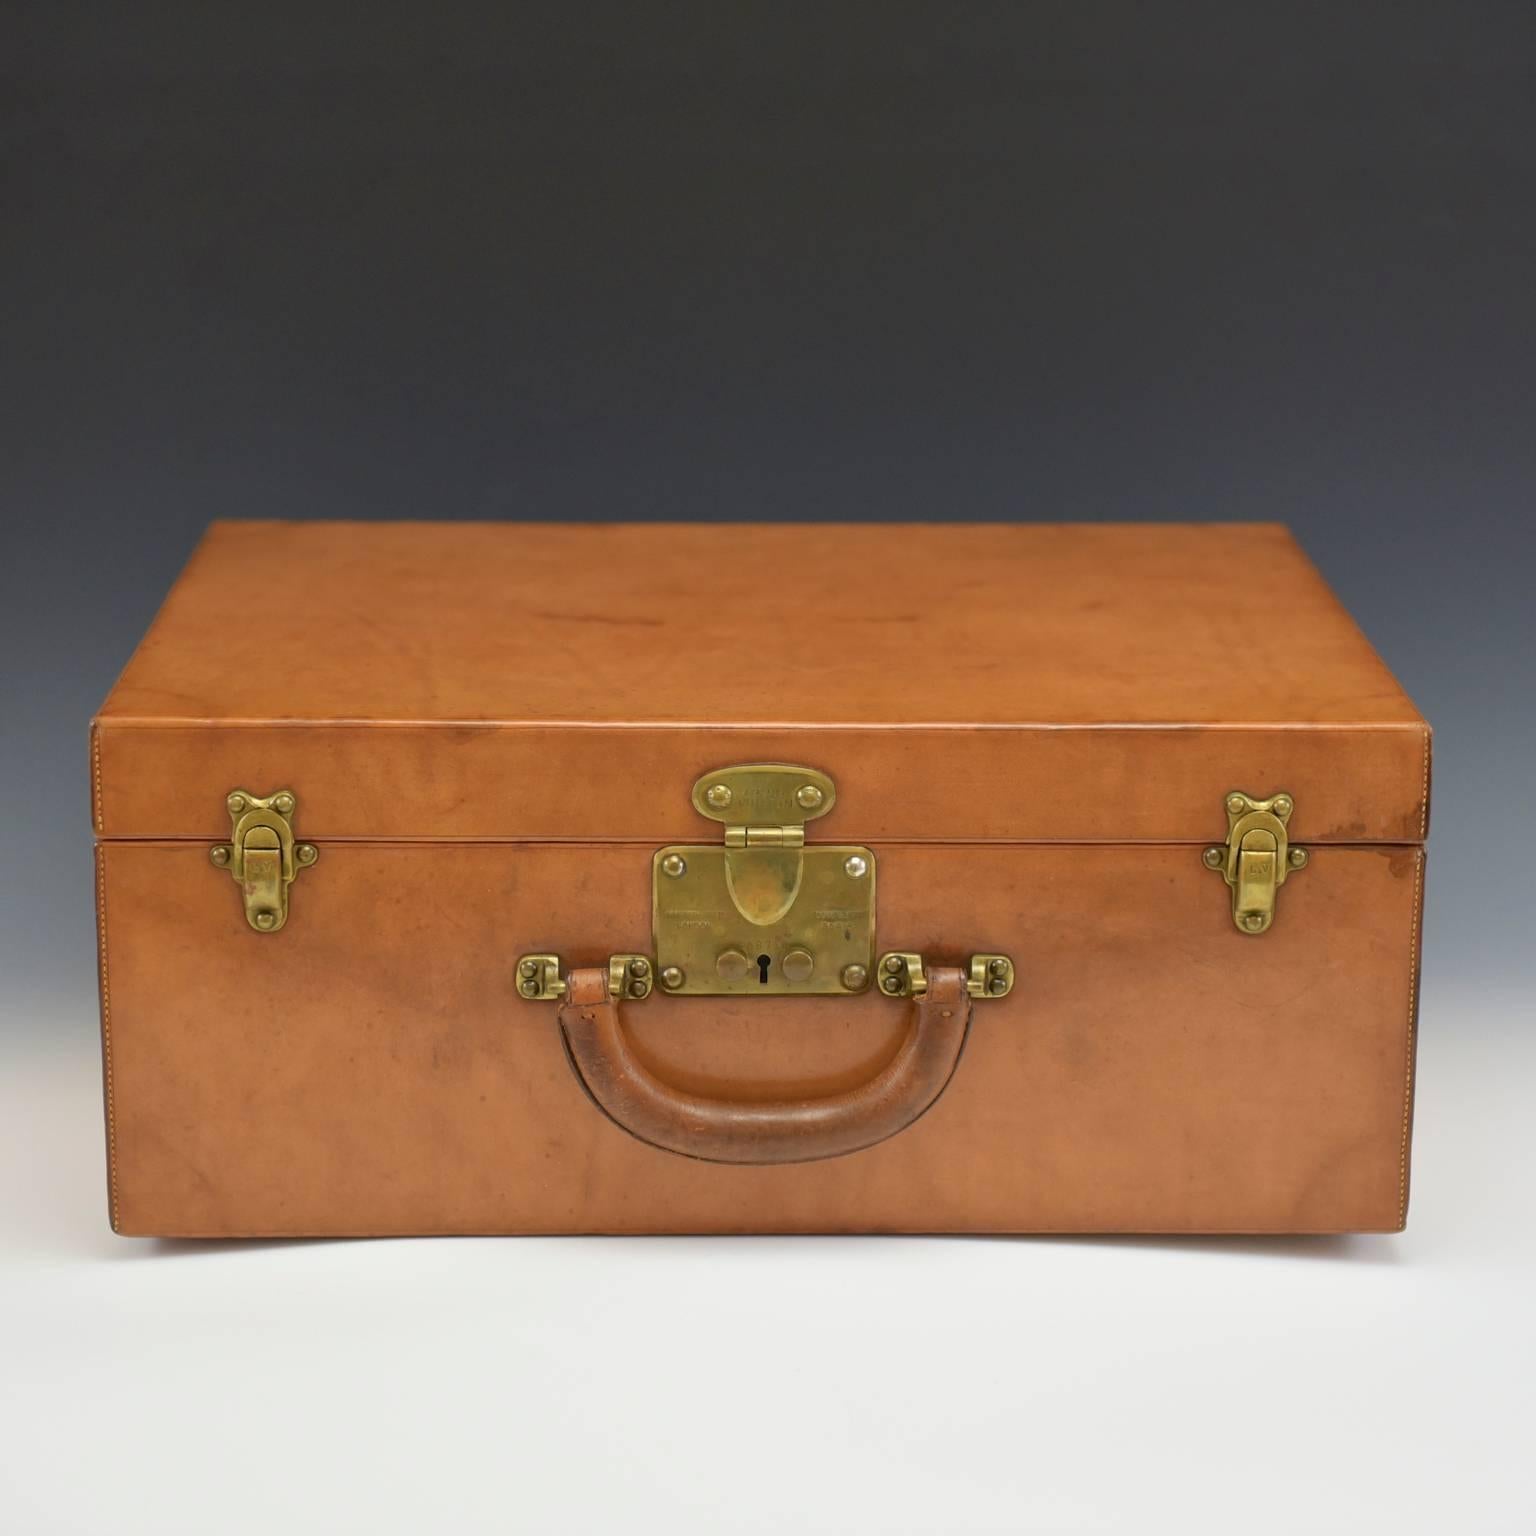 Une magnifique valise de nuit en cuir Louis Vuitton, circa 1935, dans un état d'origine exceptionnel, idéale pour une nuit ou un week-end. Intérieur en cuir d'origine.

Louis Vuitton a ouvert son premier magasin rue Neuve des Capucines, à Paris, en